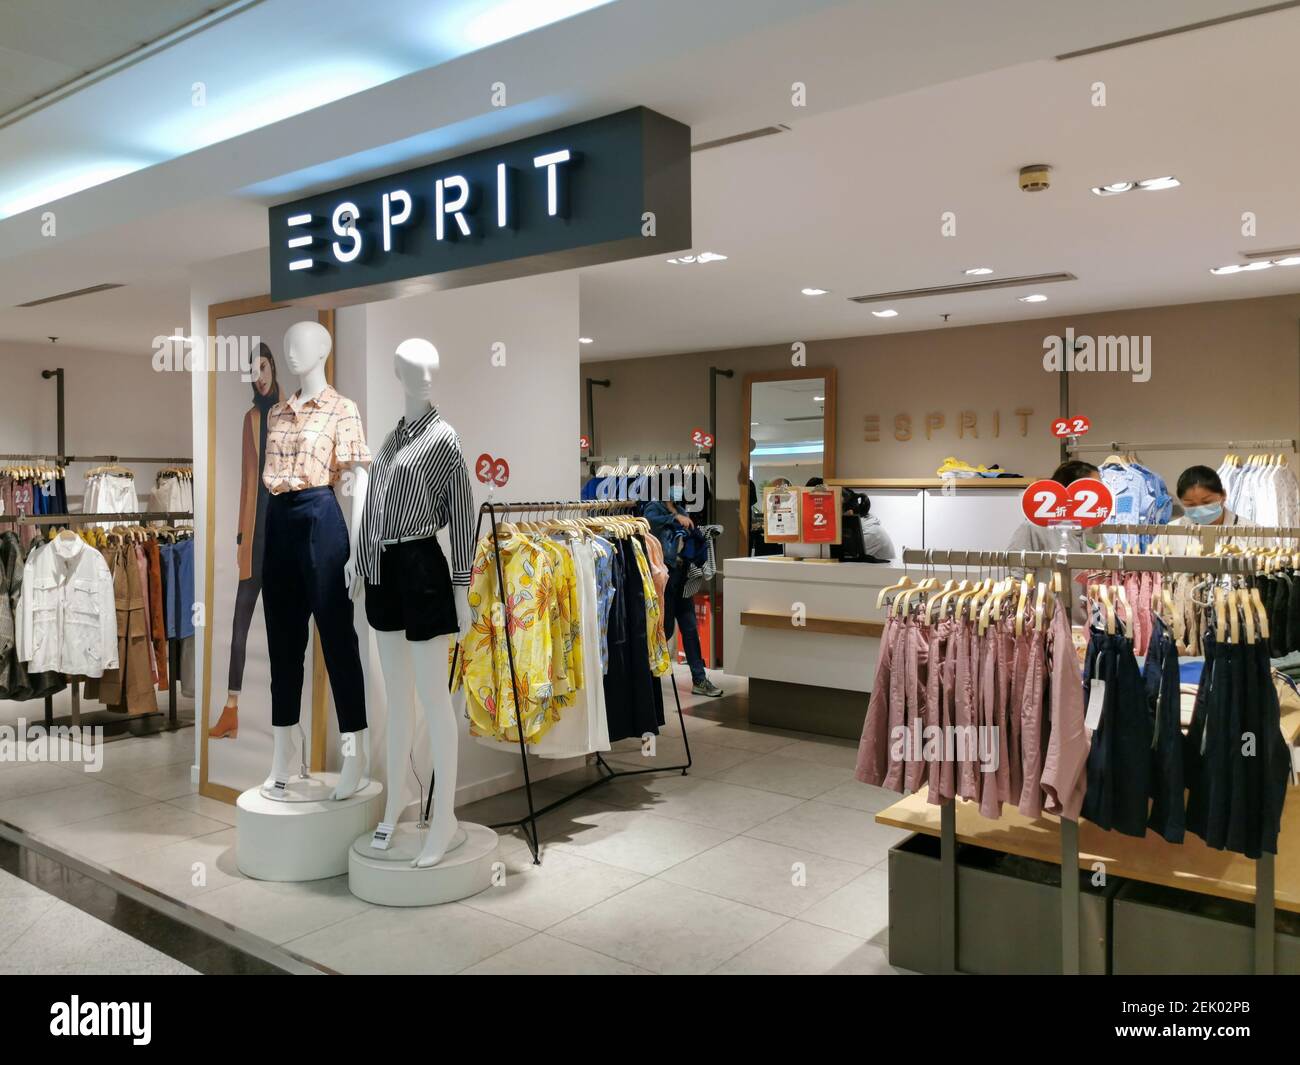 Shanghai,CHINA-el 16 de abril de 2020, la tienda Esprit ubicada en la plaza  de compras de la calle peatonal nang East Road, Shanghai, vendió toda la  ropa con un descuento del 2%.